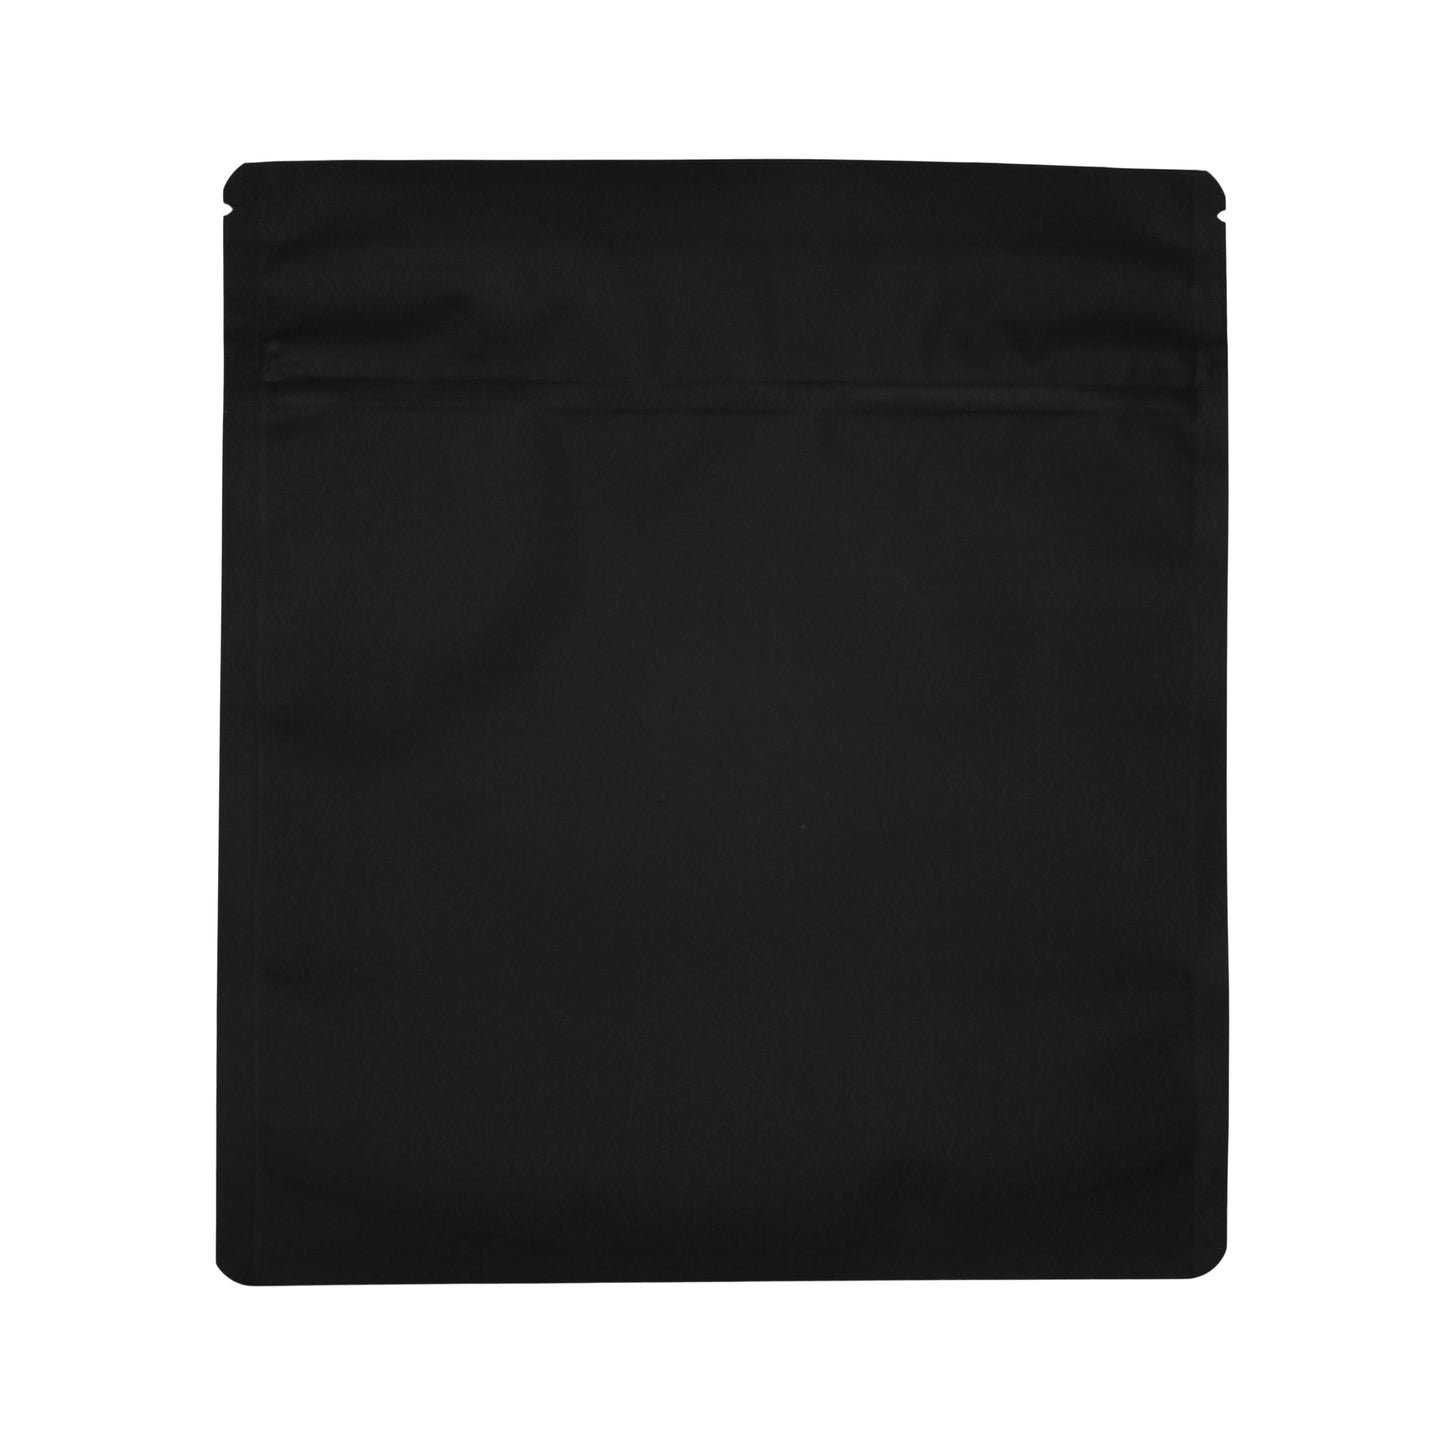 Bag King Child-Resistant Wide Mouth Bag (1 oz) 7" x 7.9" Matte Black